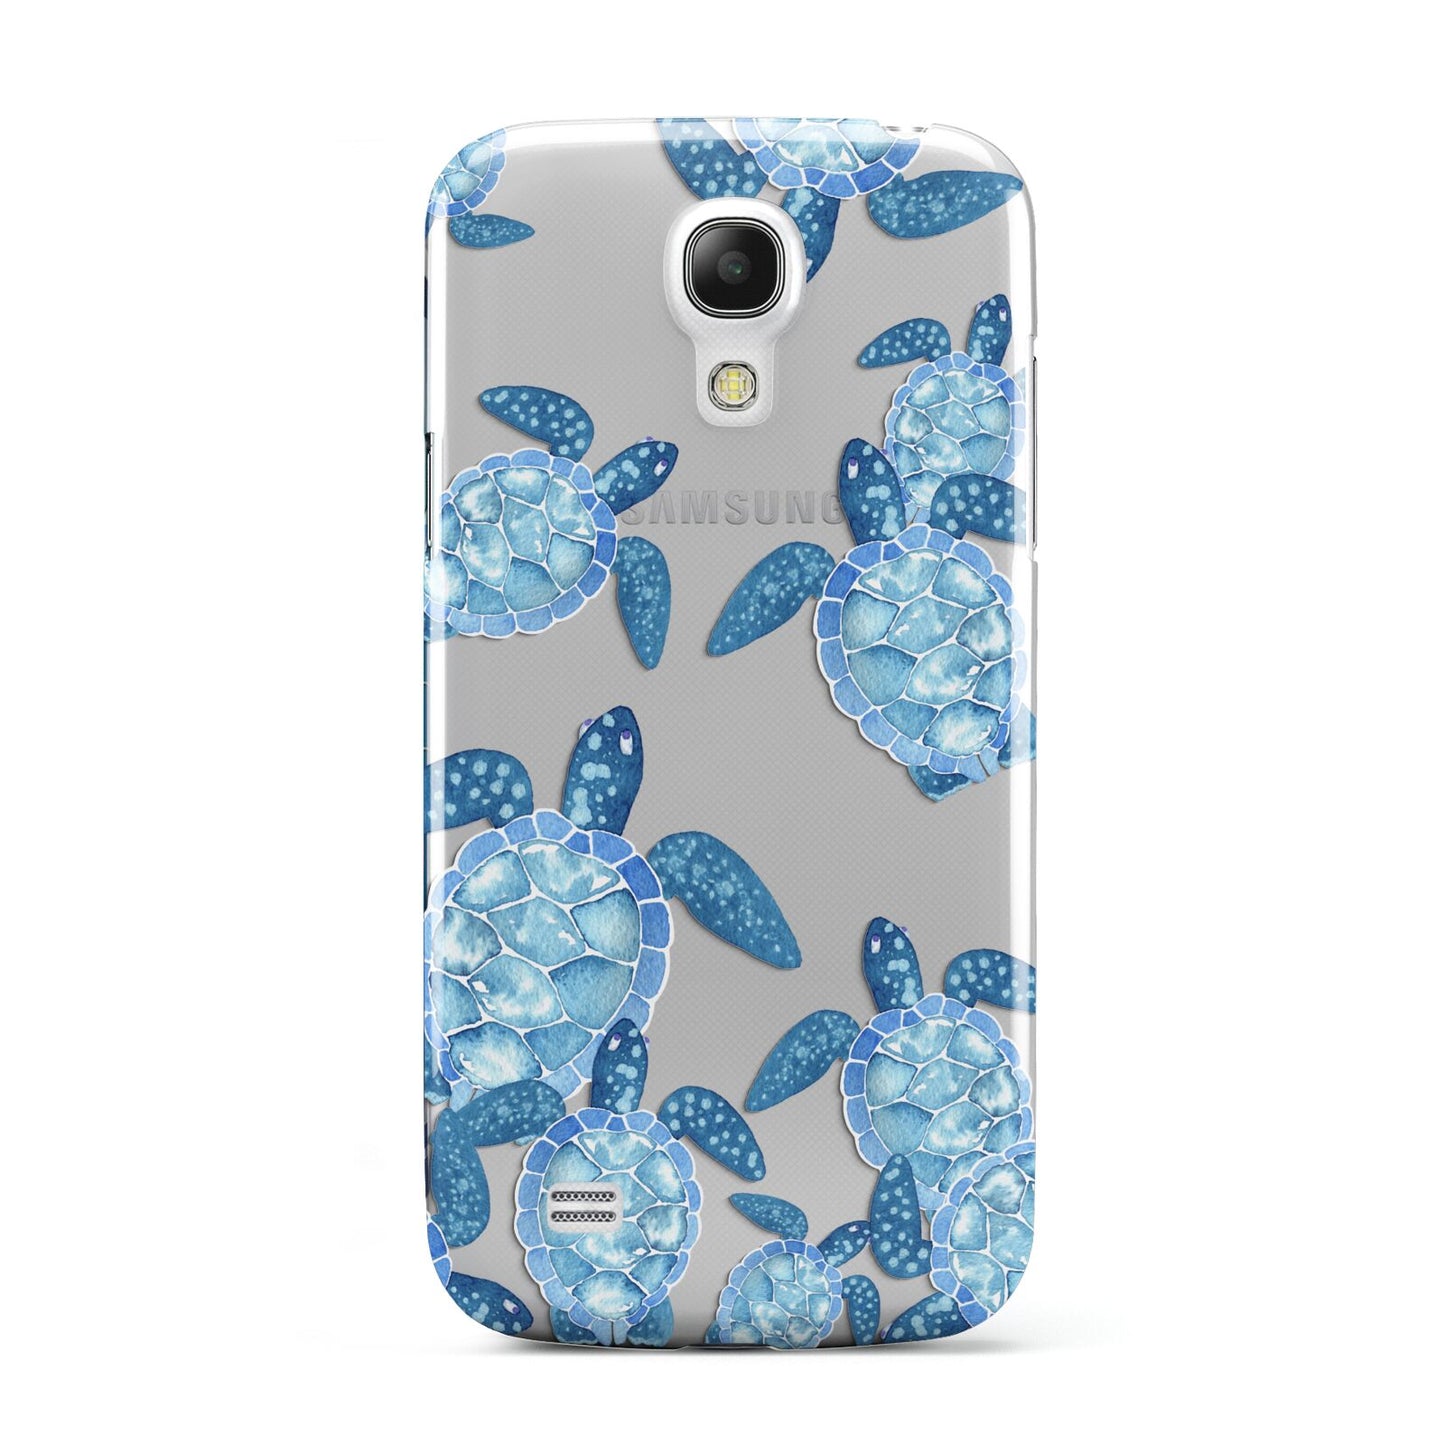 Turtle Samsung Galaxy S4 Mini Case